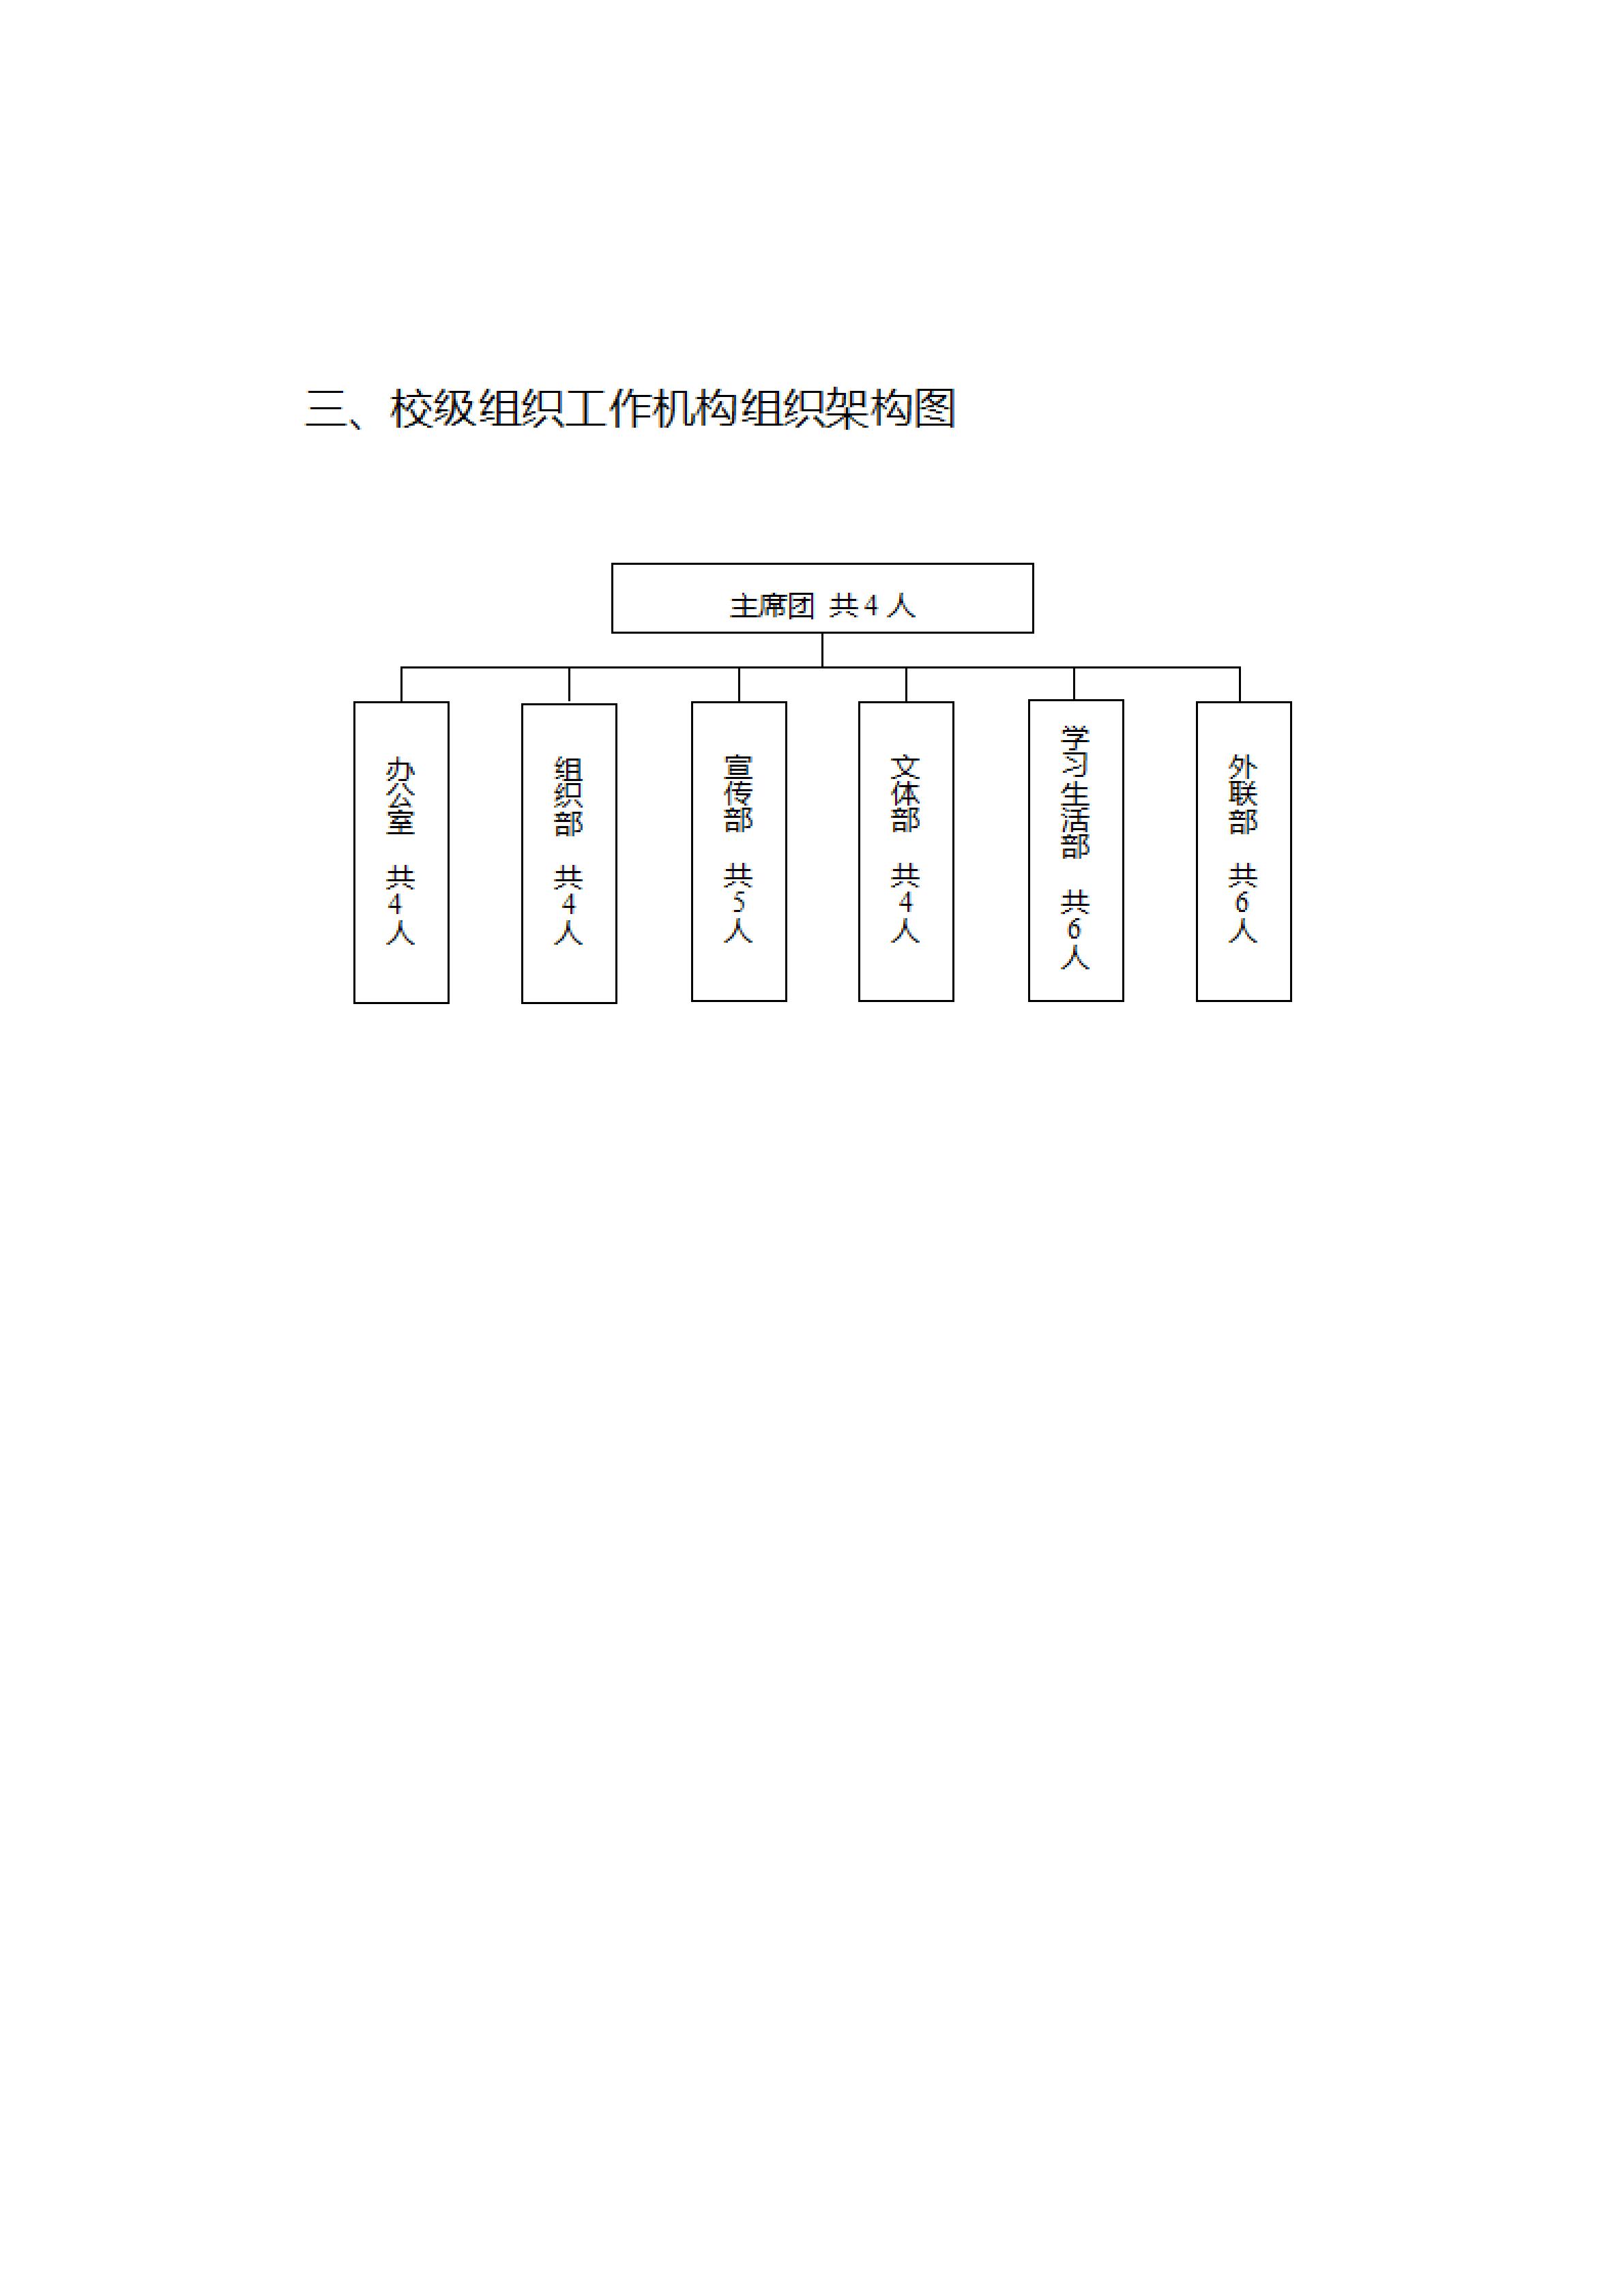 天门职业学院学生会组织改革公示(图17)